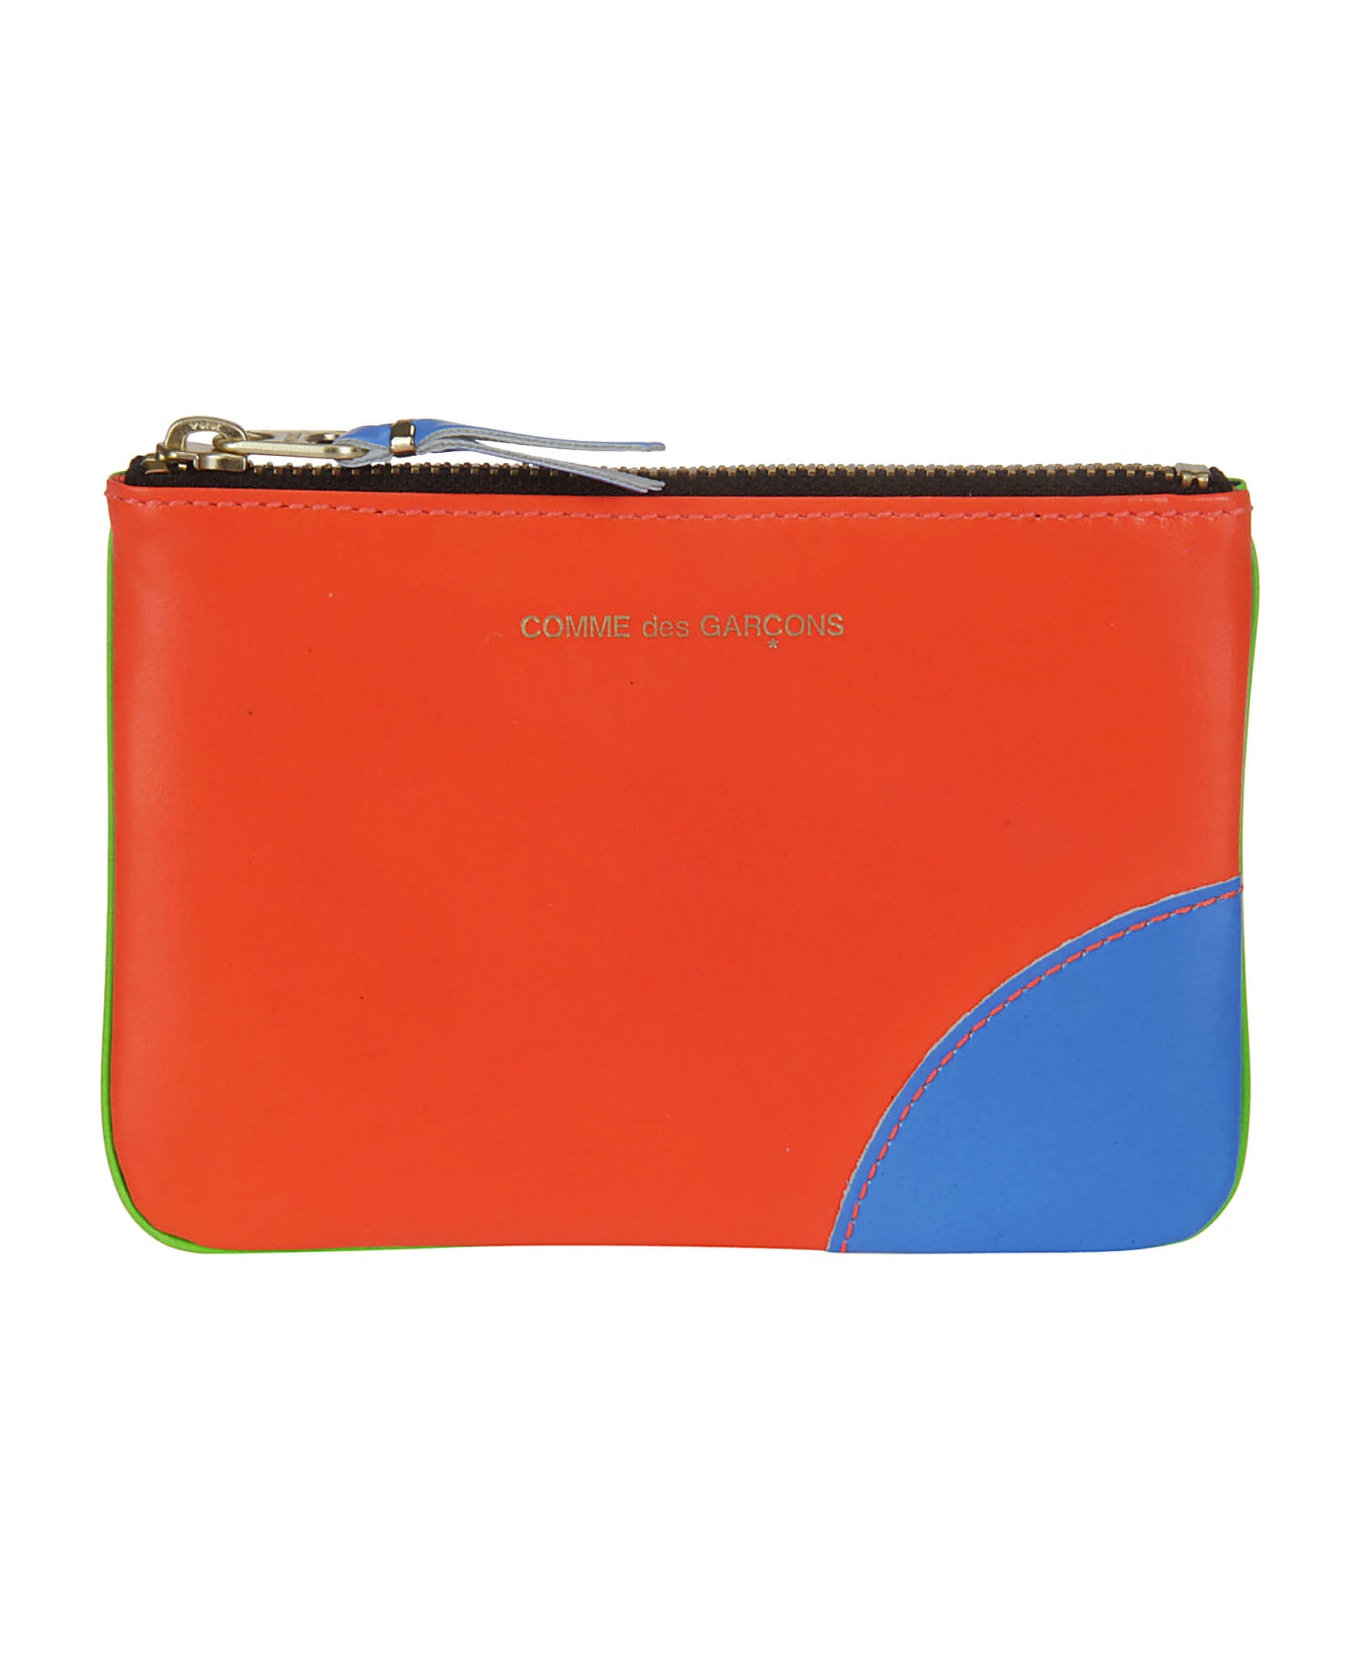 Comme des Garçons Wallet Super Fluo Leather Line - 3 財布